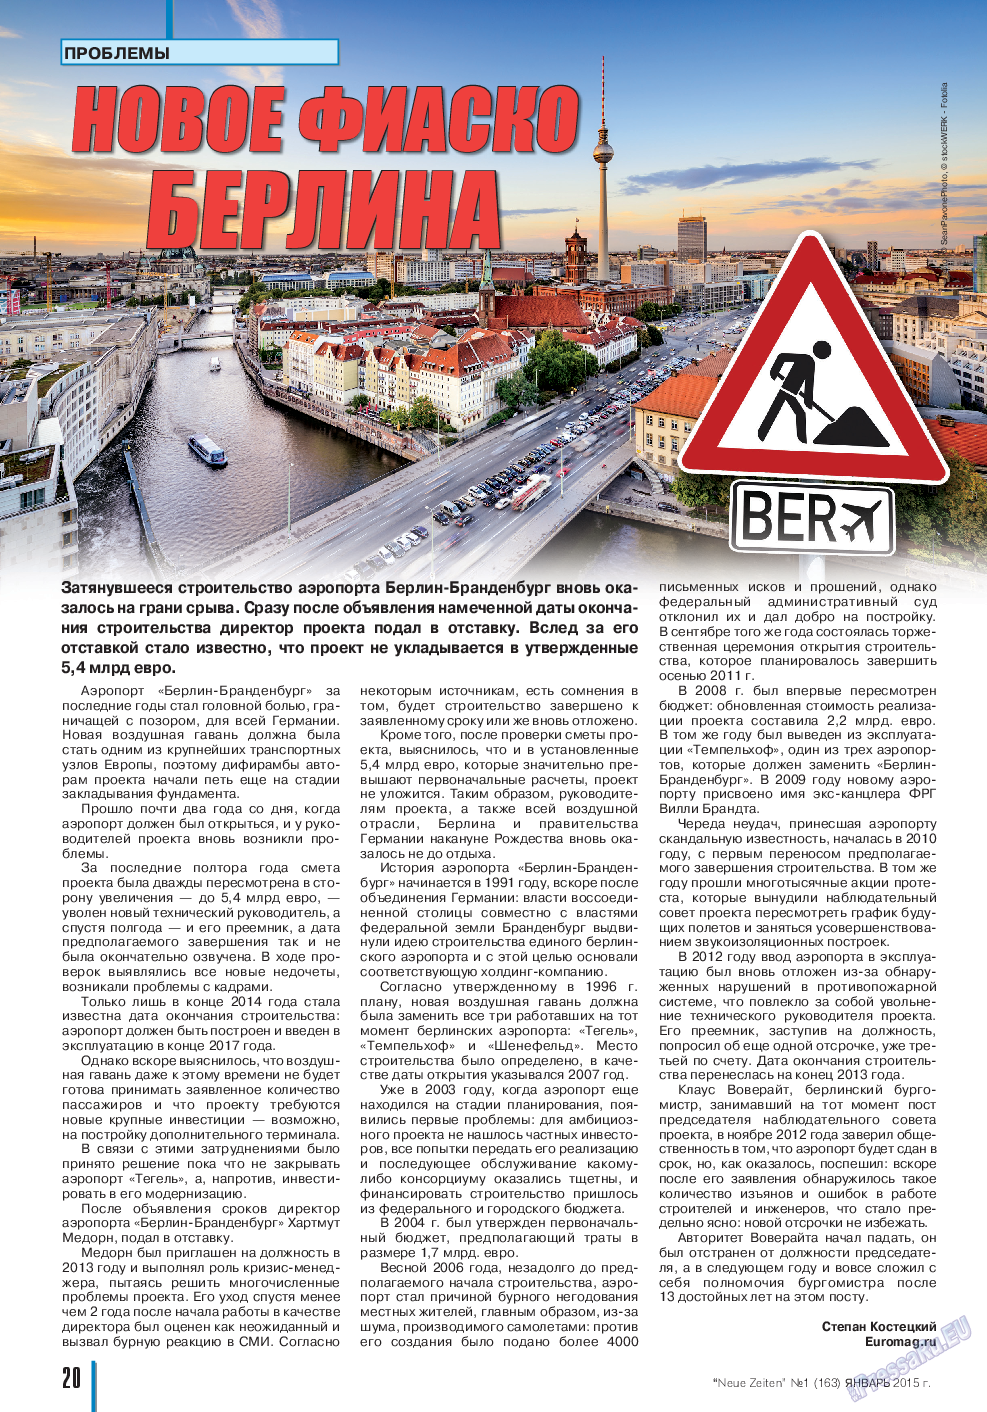 Neue Zeiten, журнал. 2015 №1 стр.20